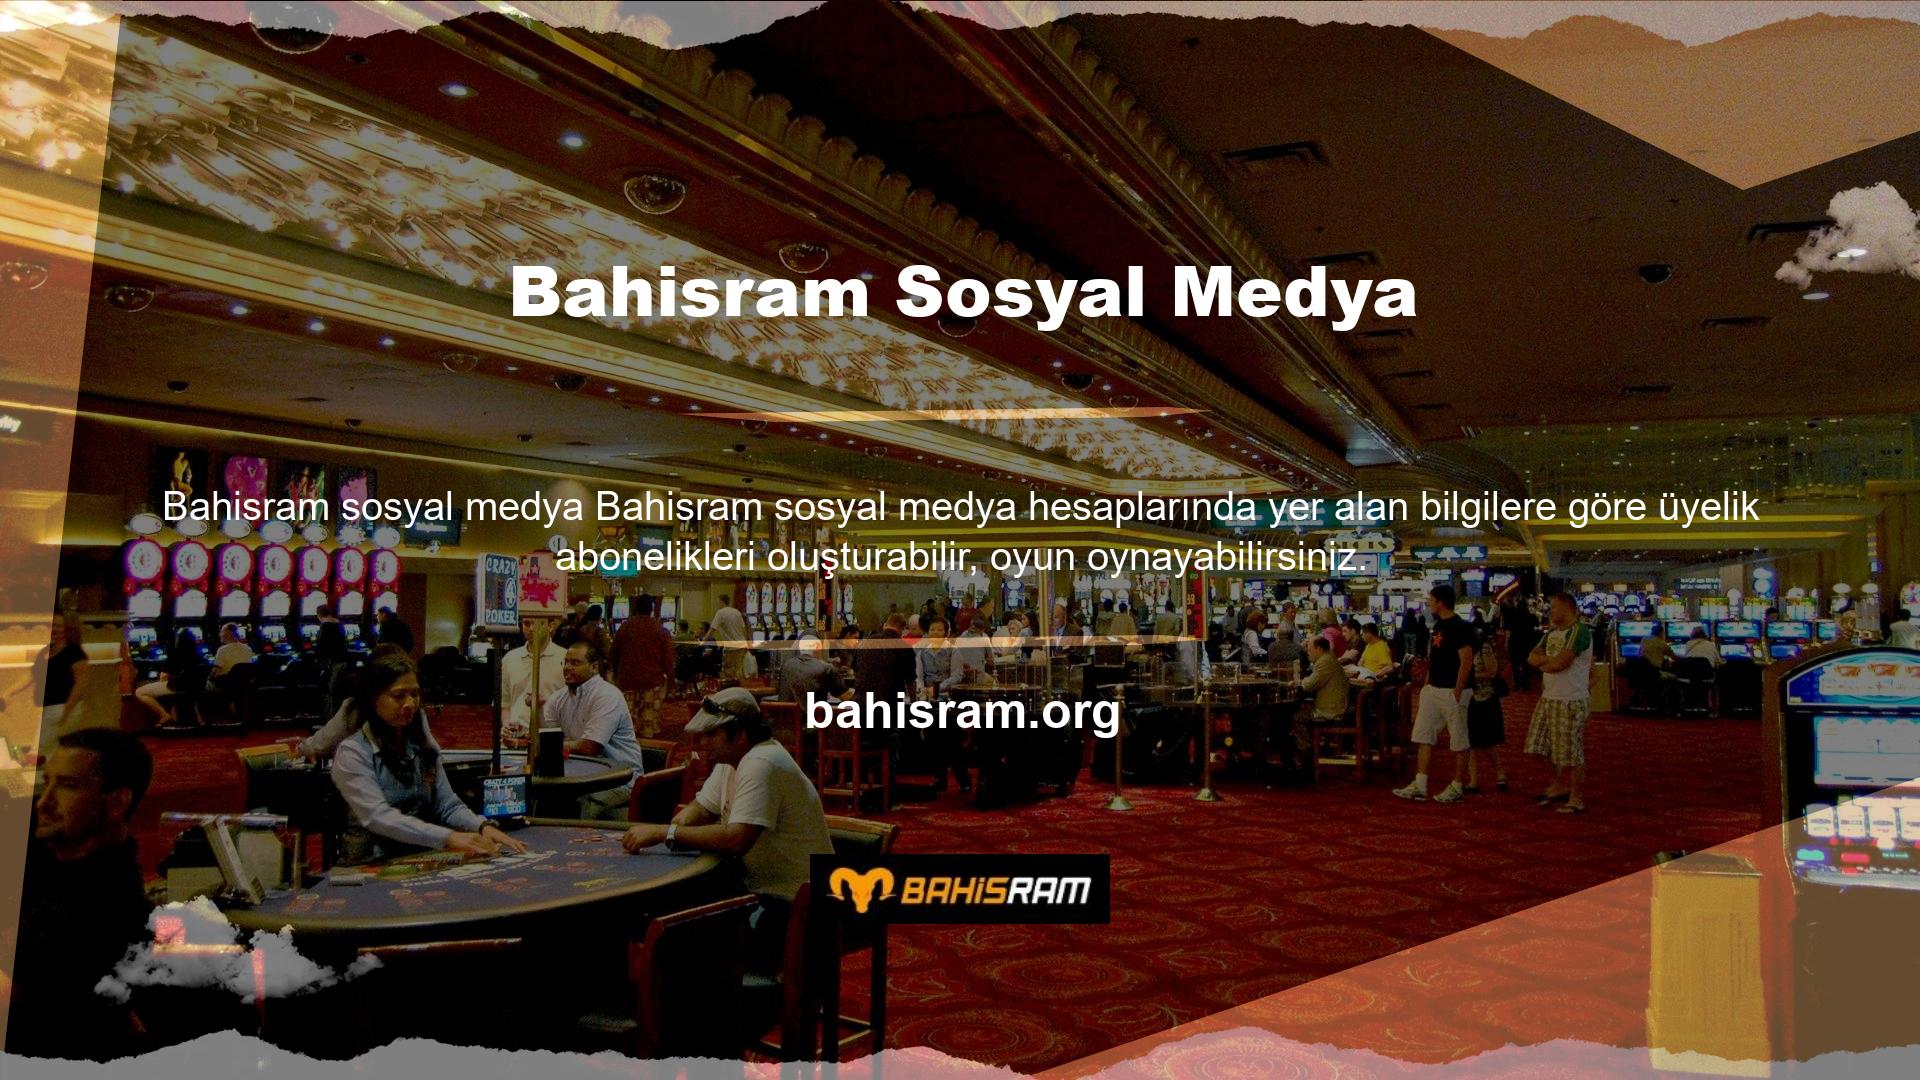 Özellikle Bahisram Twitter hesabını takip ederseniz orada paylaşım fırsatlarını göreceksiniz